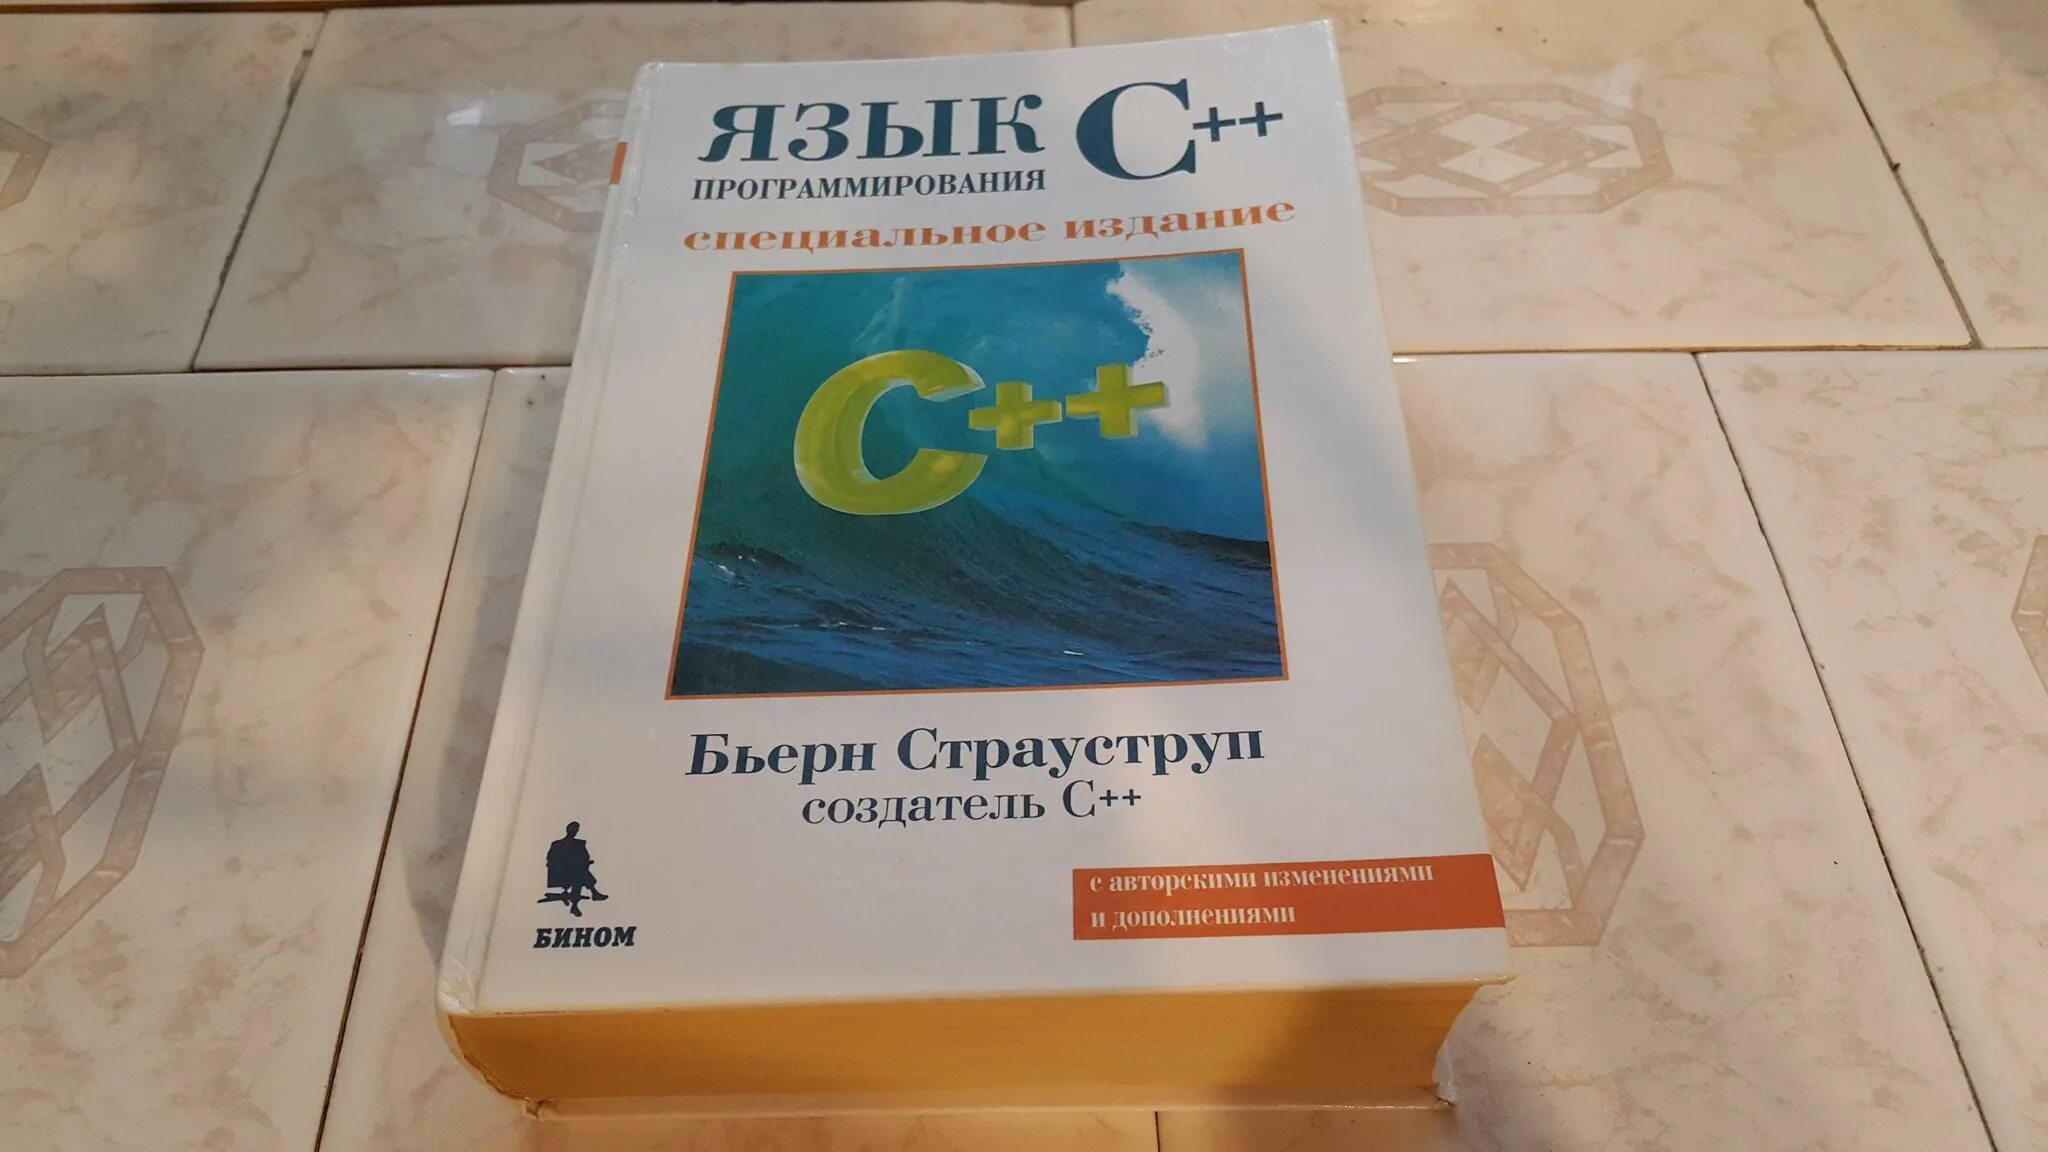 Бьерн Страуструп c++. Книга Страуструпа язык программирования c++. Бьярне Страуструп с++ книга. Бьёрн Страуструп язык программирования c++.